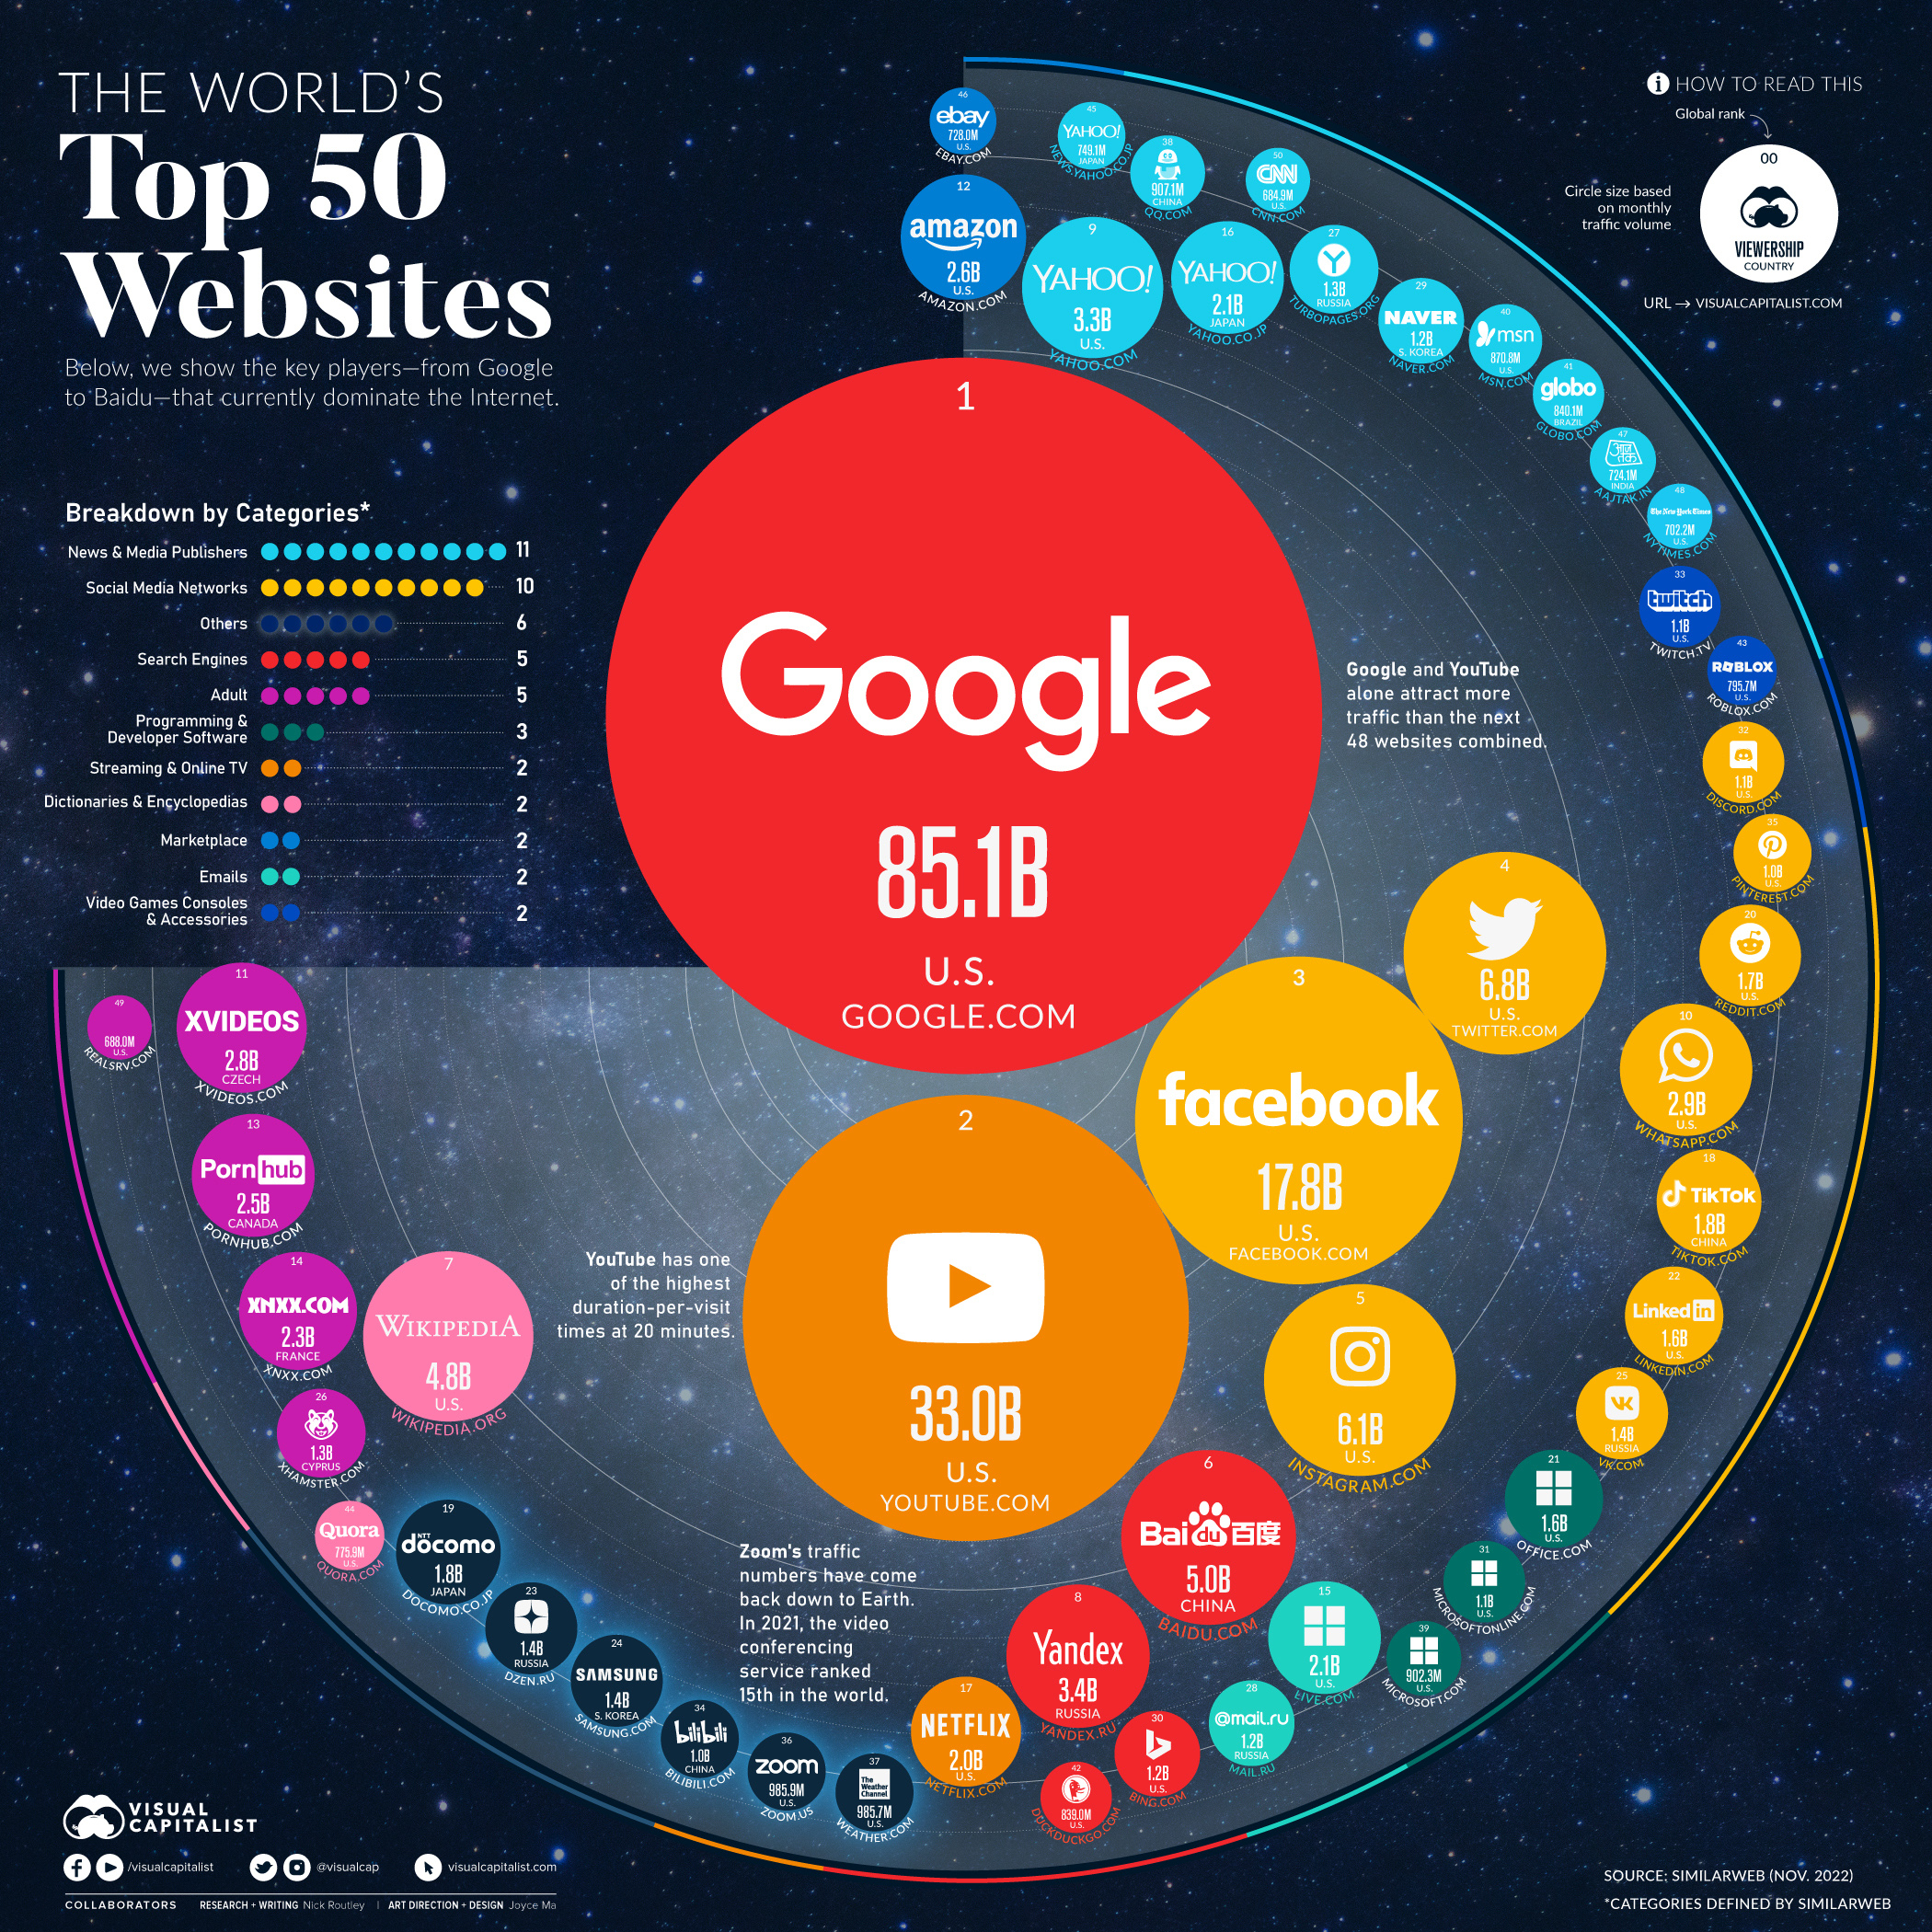 Afbeelding waarin grafisch is uitgebeeld welke websites populair zijn.